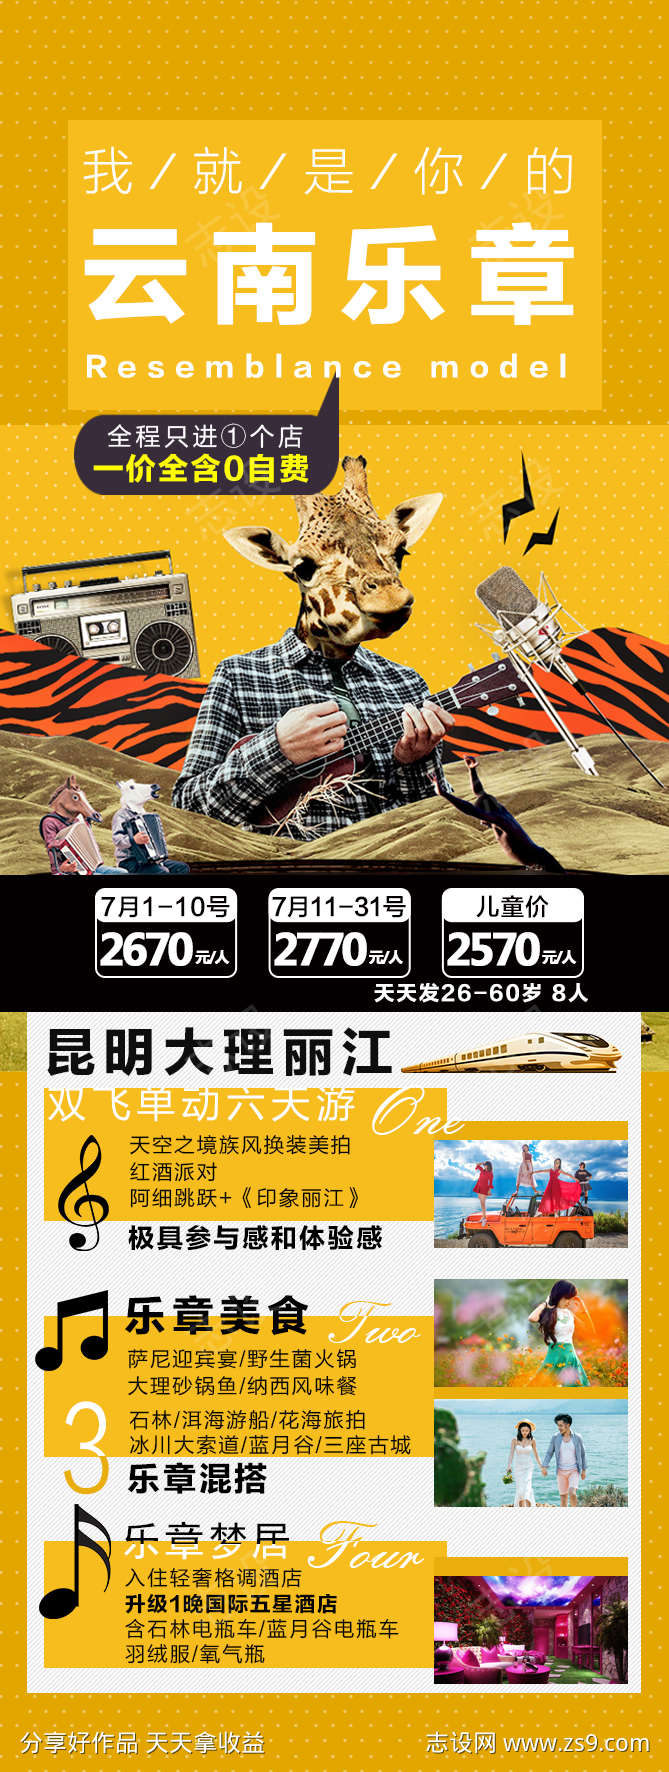 云南旅游海报广告